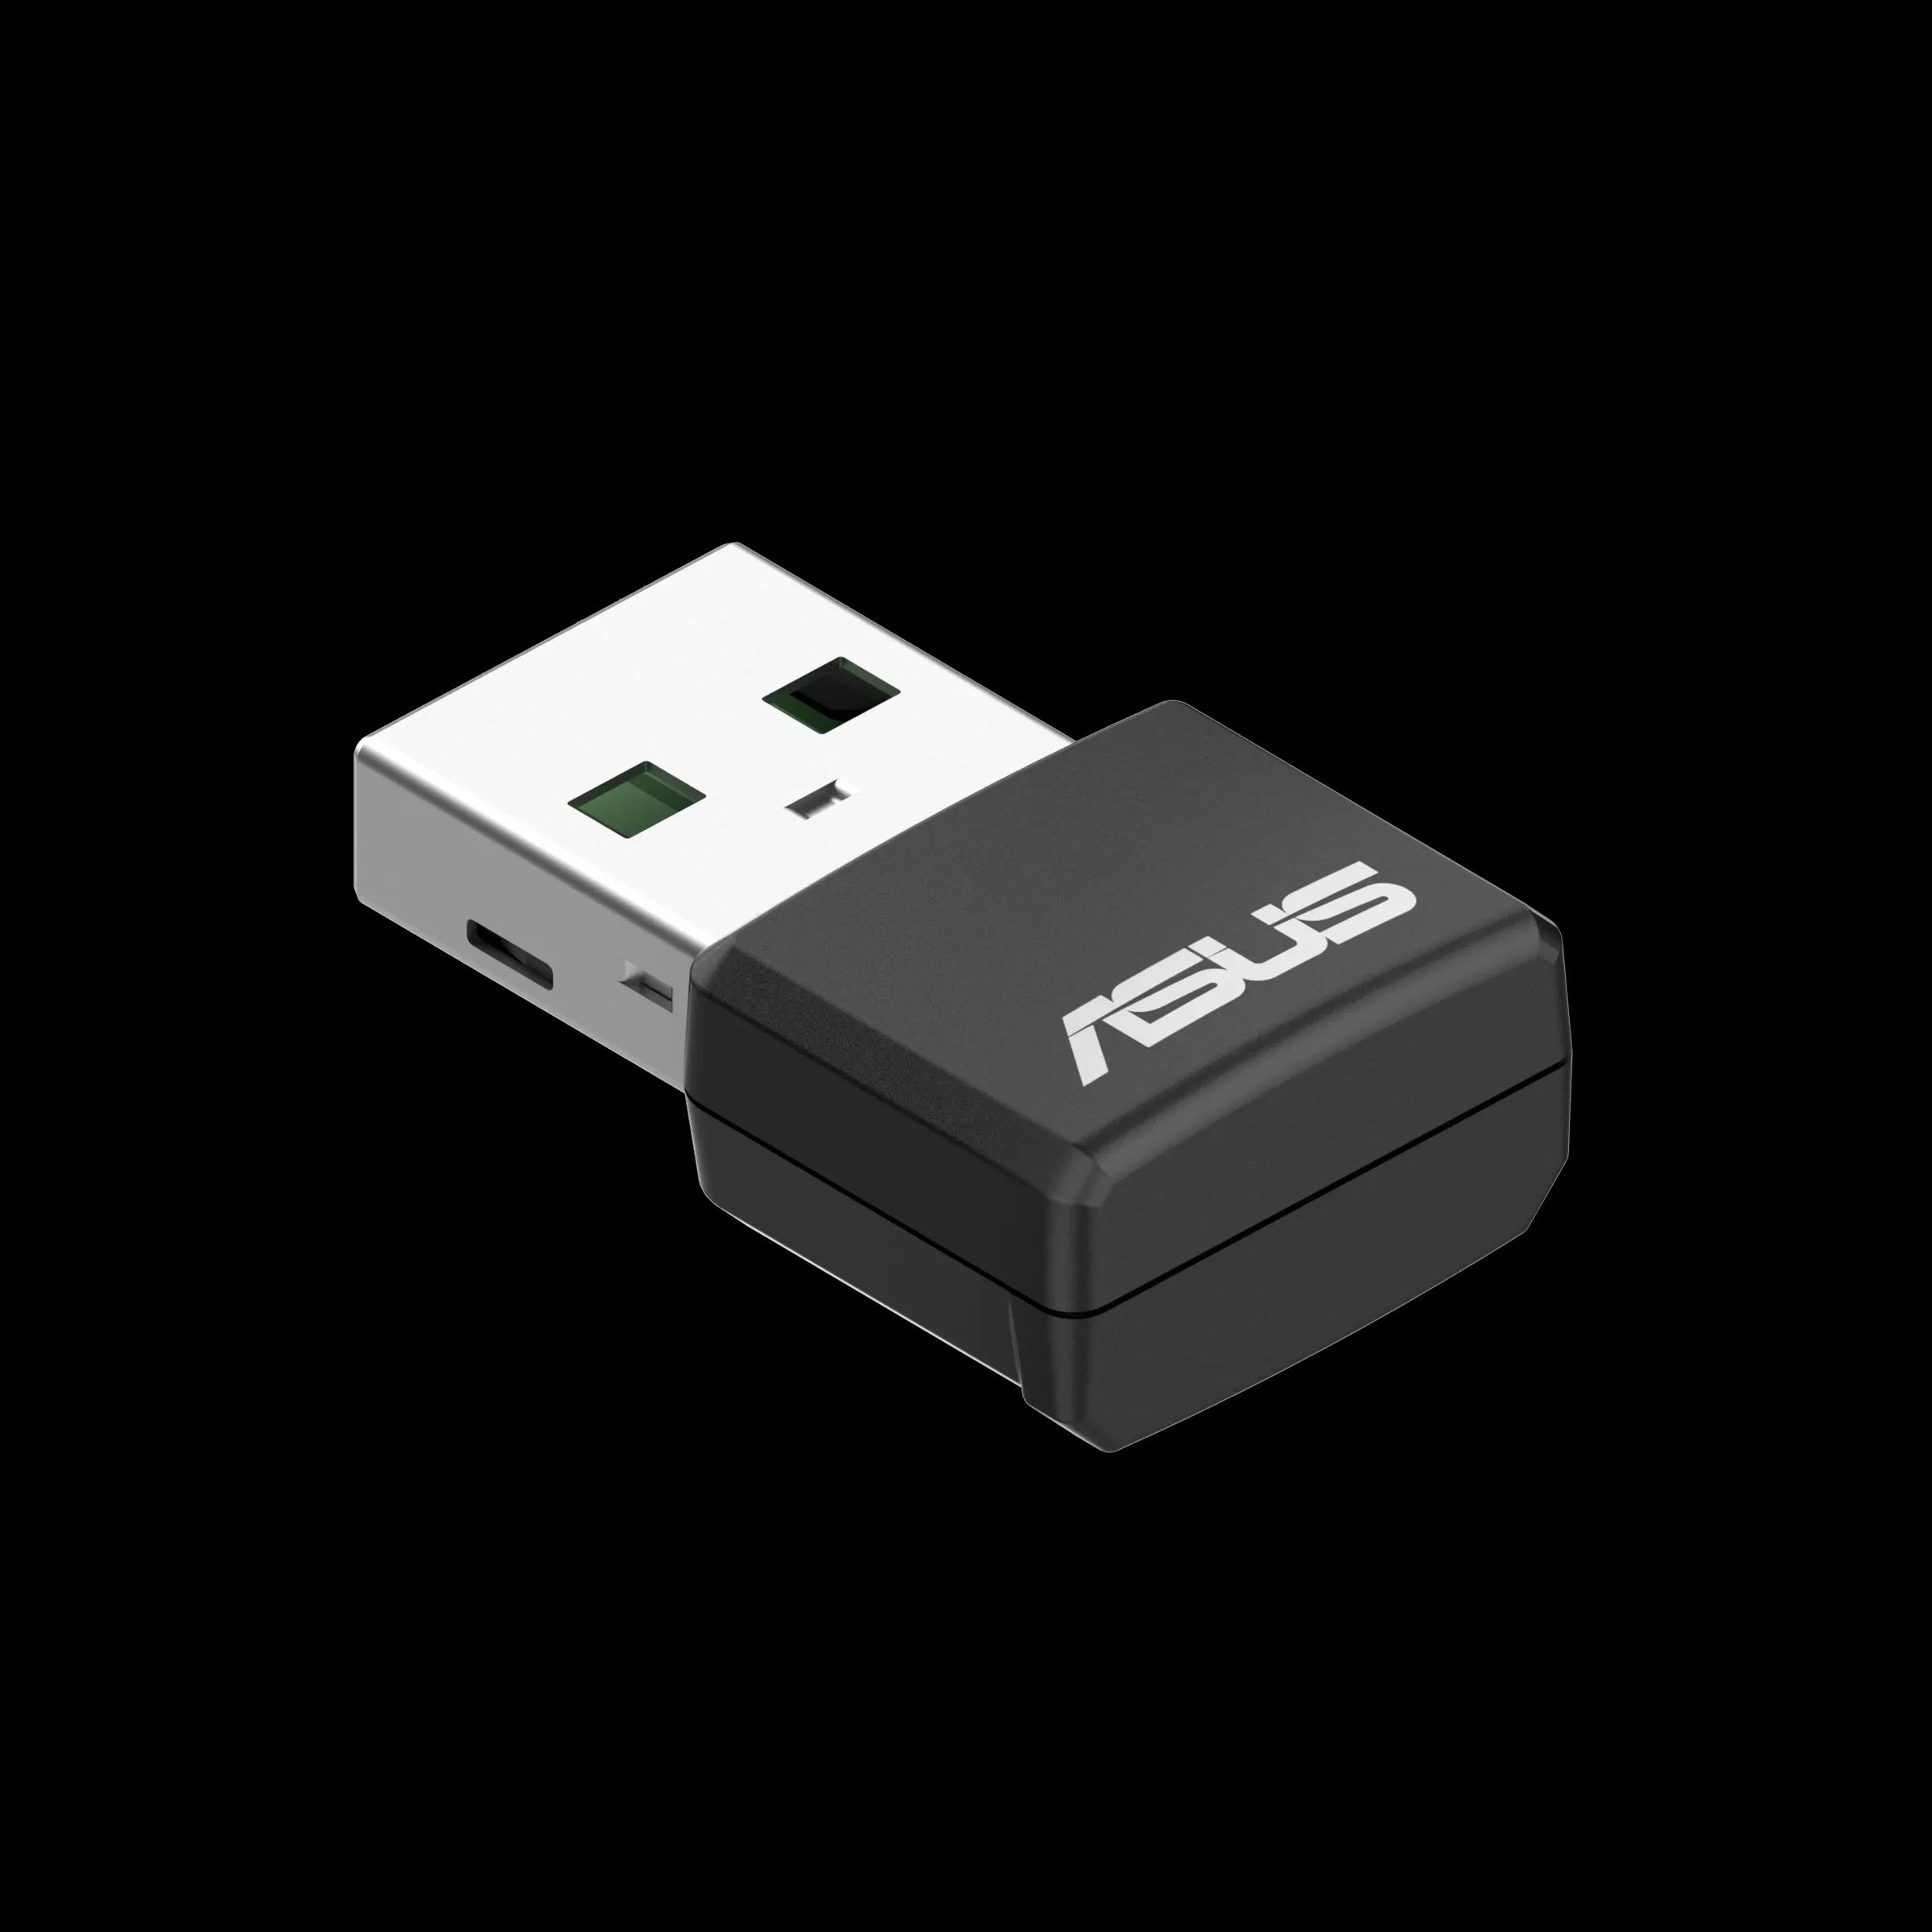 USB-AX55 NANO USB WIFI6 ADAPTER